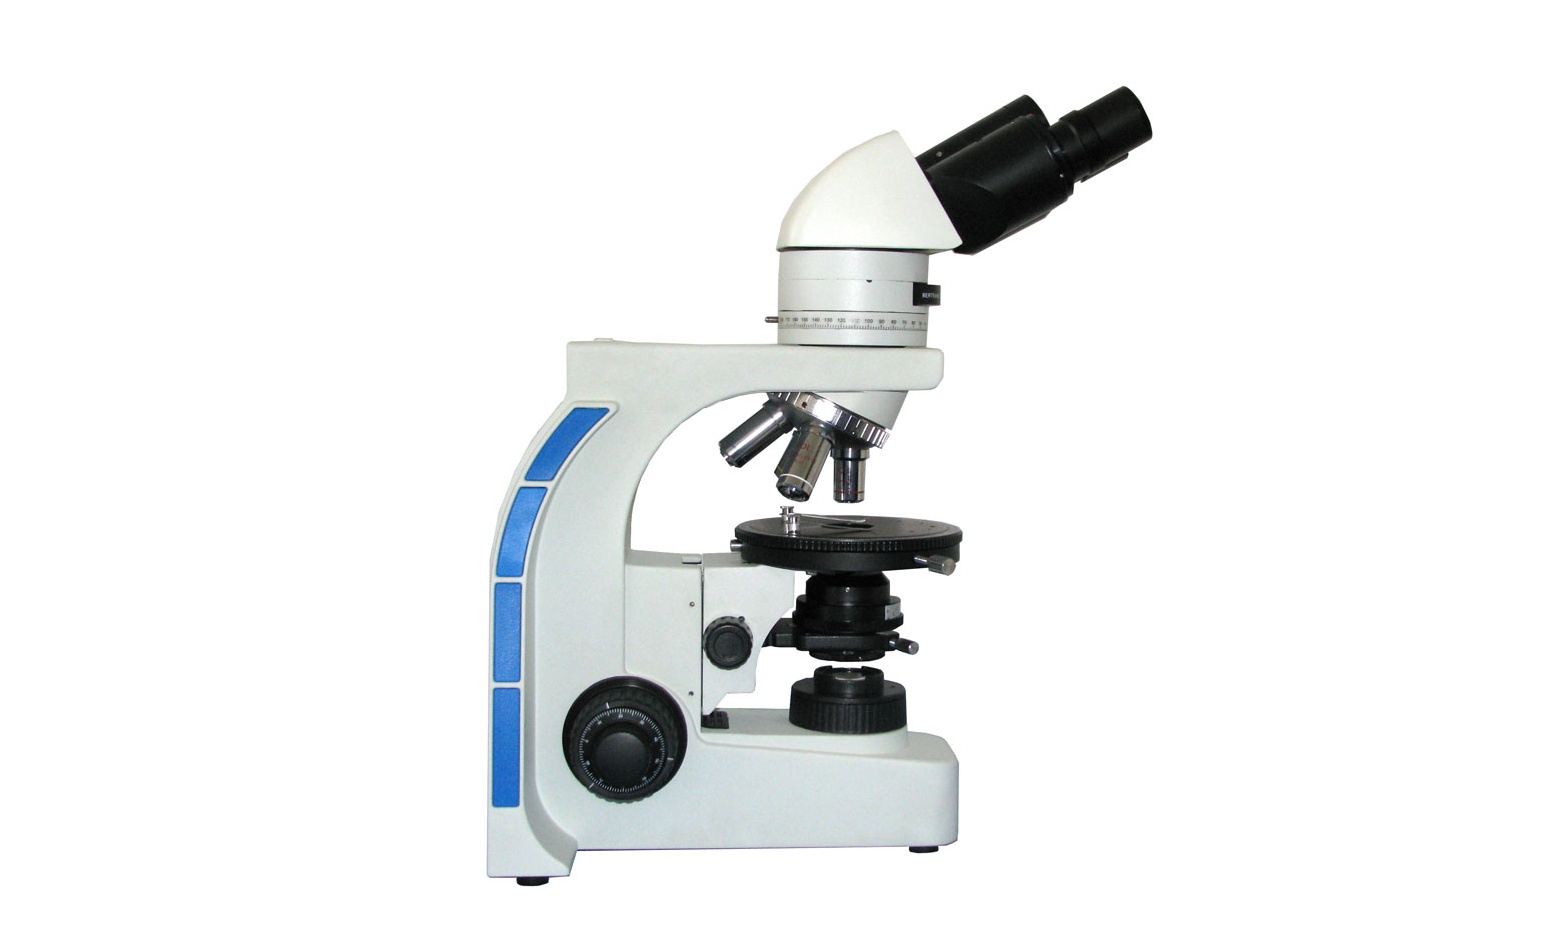 广东石油化工学院偏光显微镜等仪器设备招标公告